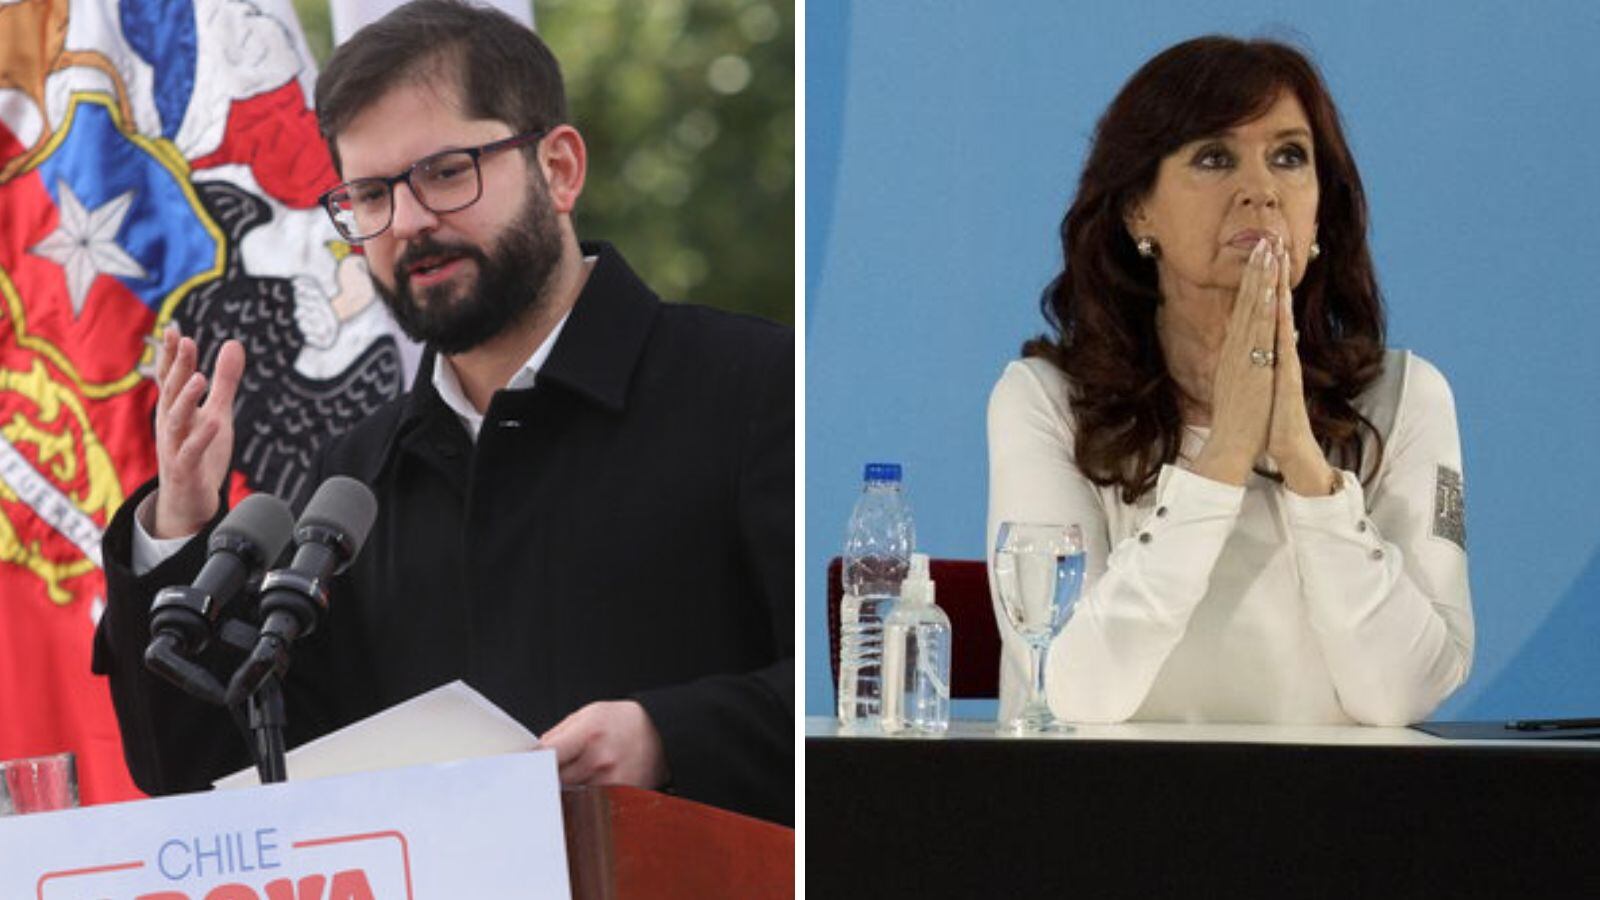 “Merece el repudio y condena de todo el continente”: Presidente Boric condenó ataque a Cristina Fernández